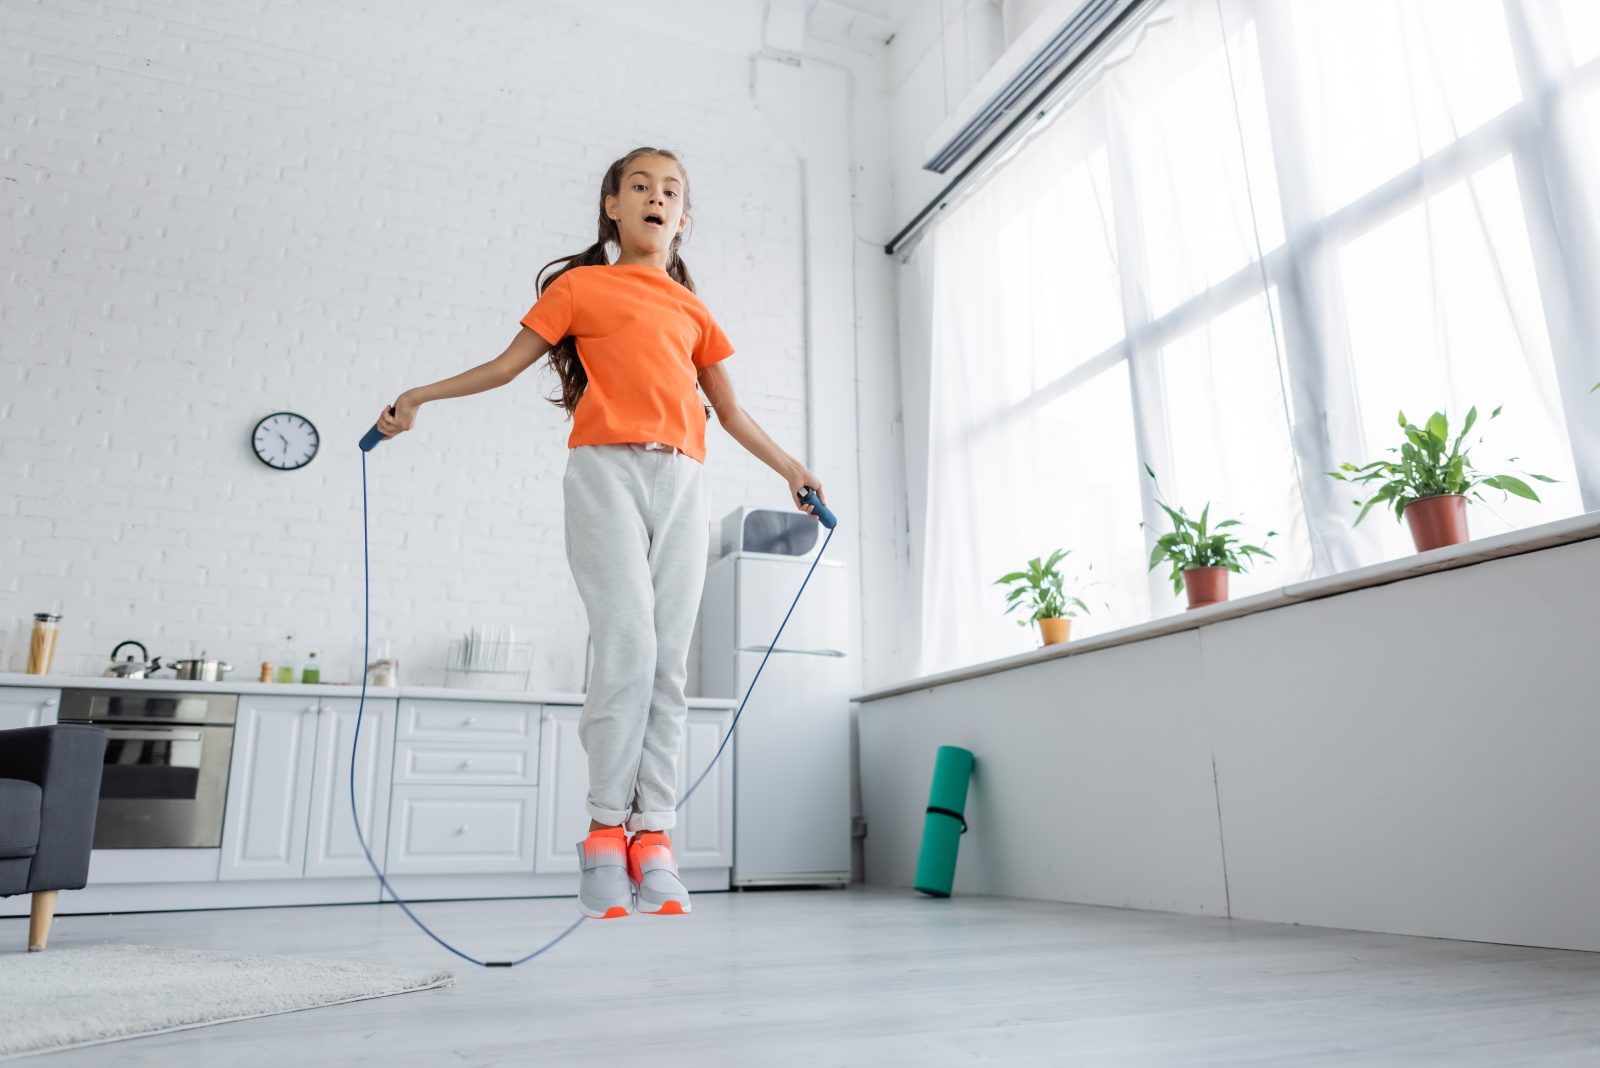 Una niña con una camisa naranja y tenis salta la cuerda en una sala blanca.